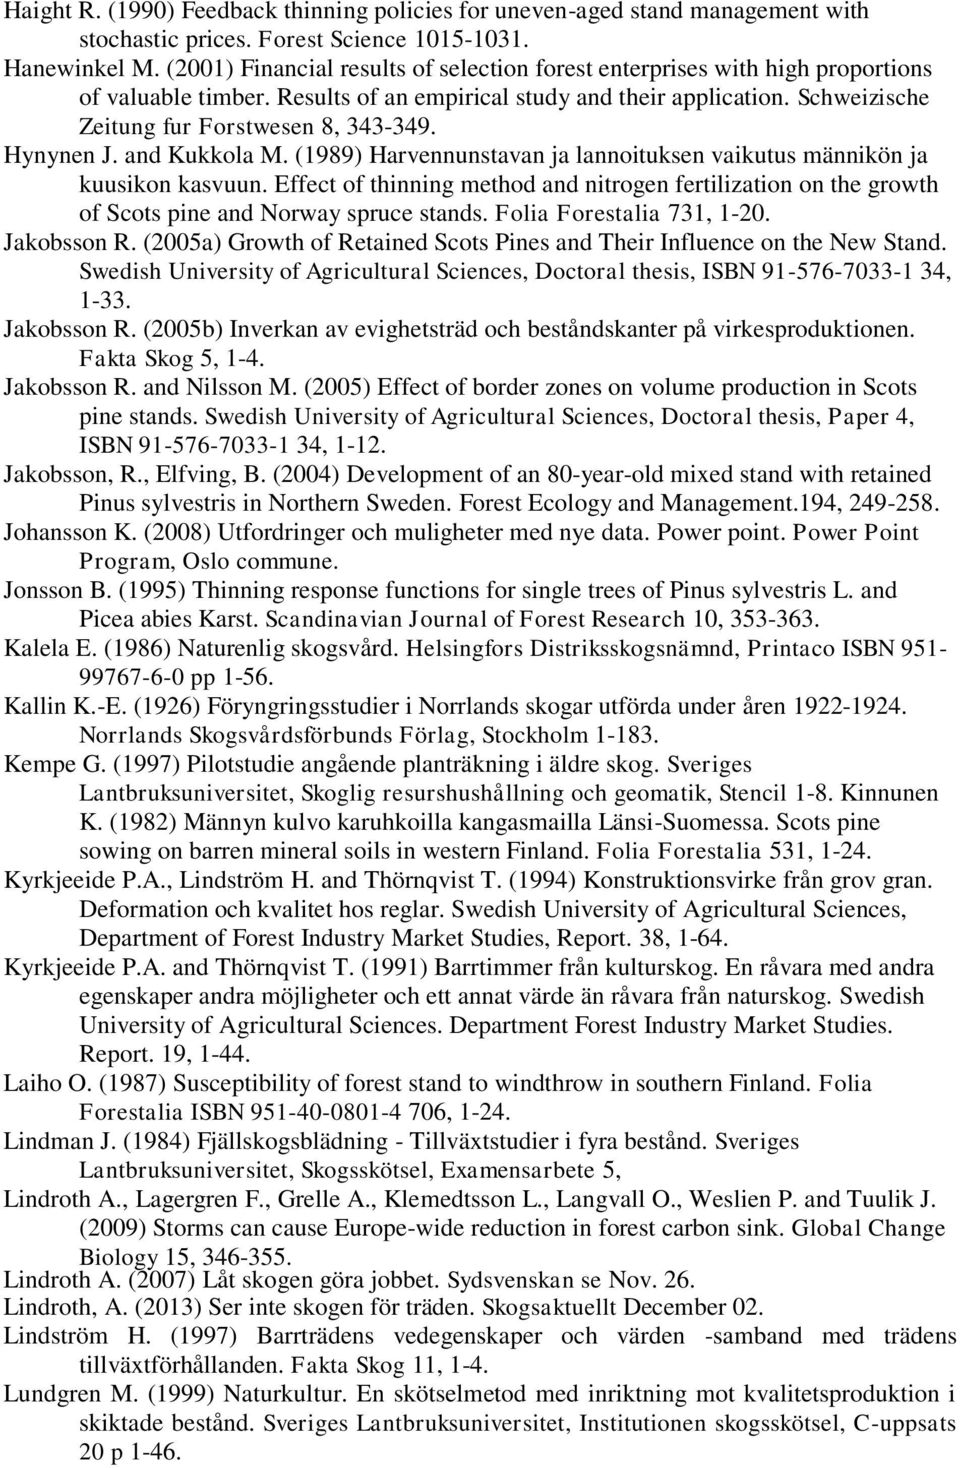 Hynynen J. and Kukkola M. (1989) Harvennunstavan ja lannoituksen vaikutus männikön ja kuusikon kasvuun.